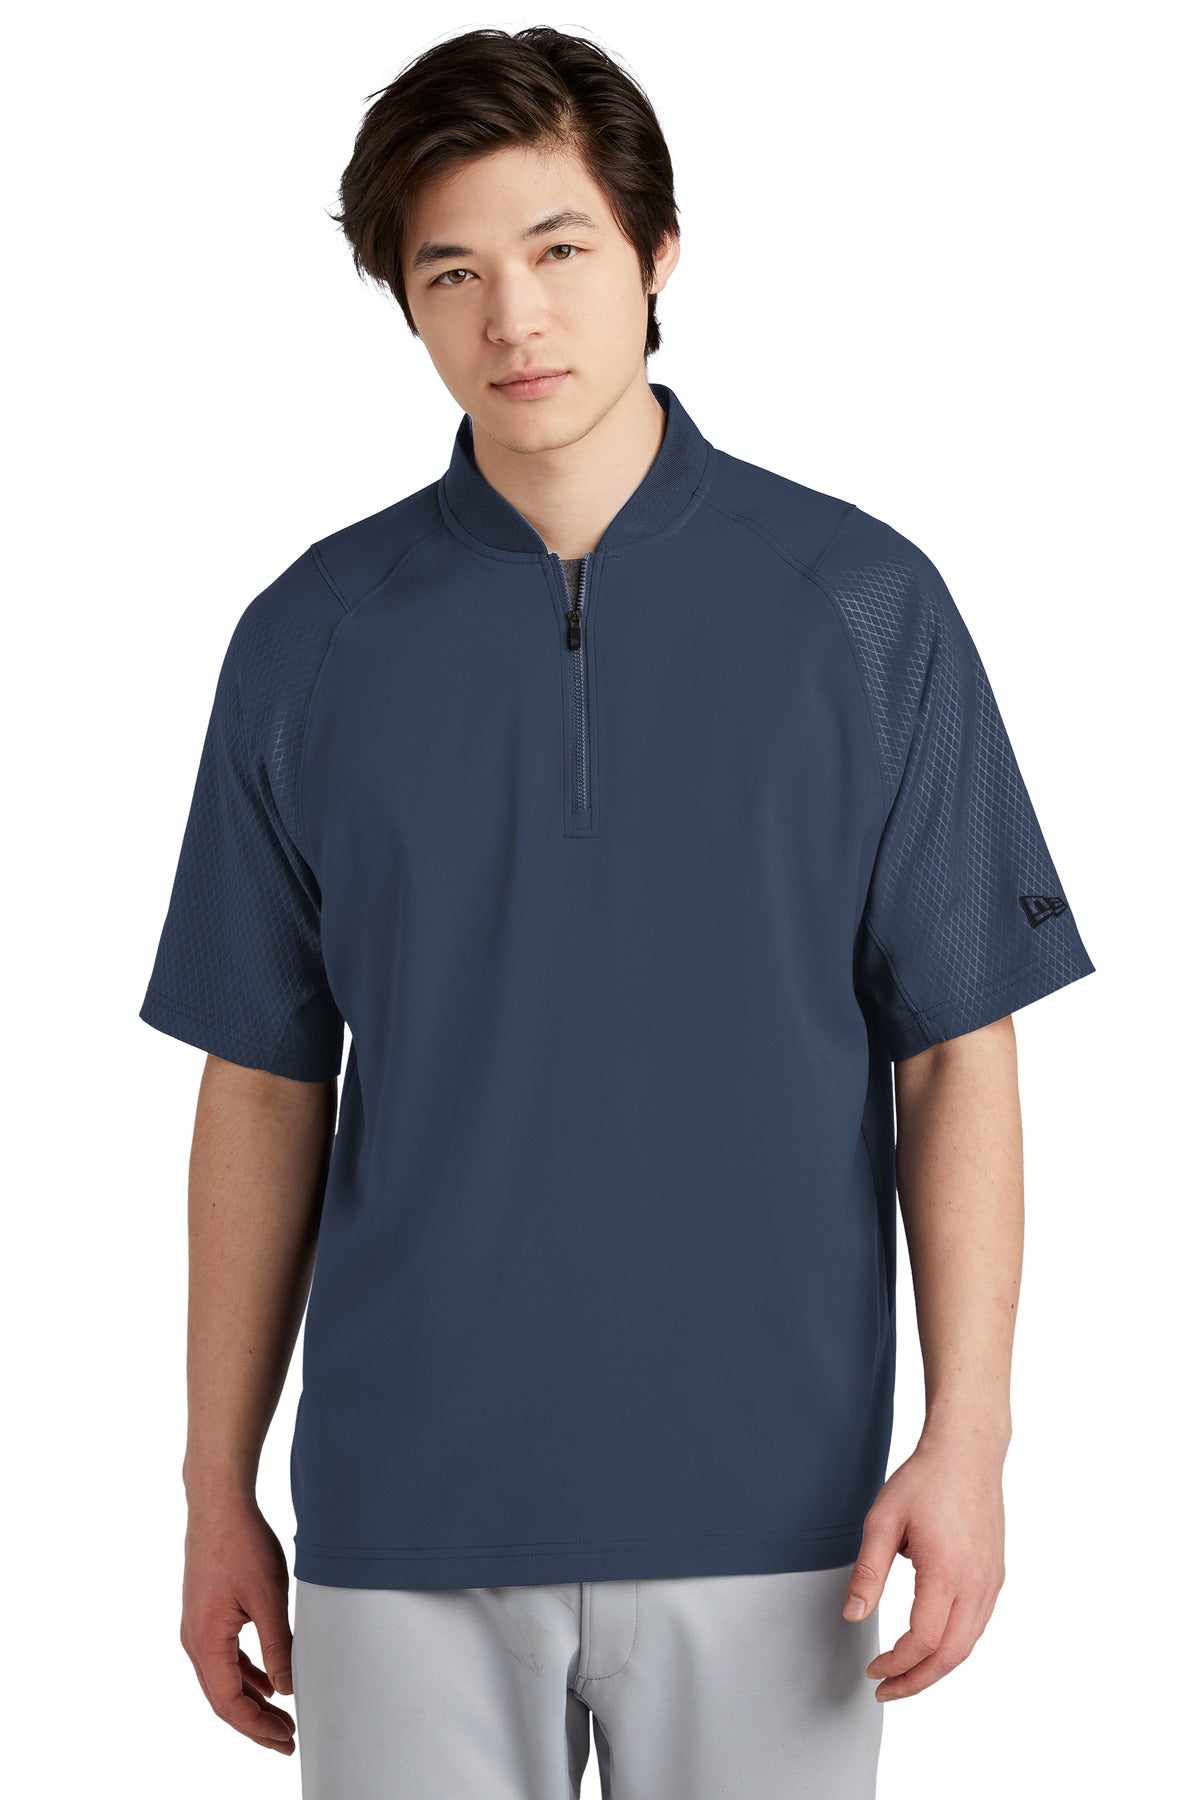 New Era ® Cage Short Sleeve 1/4-Zip Jacket. NEA600 – DFW Impression